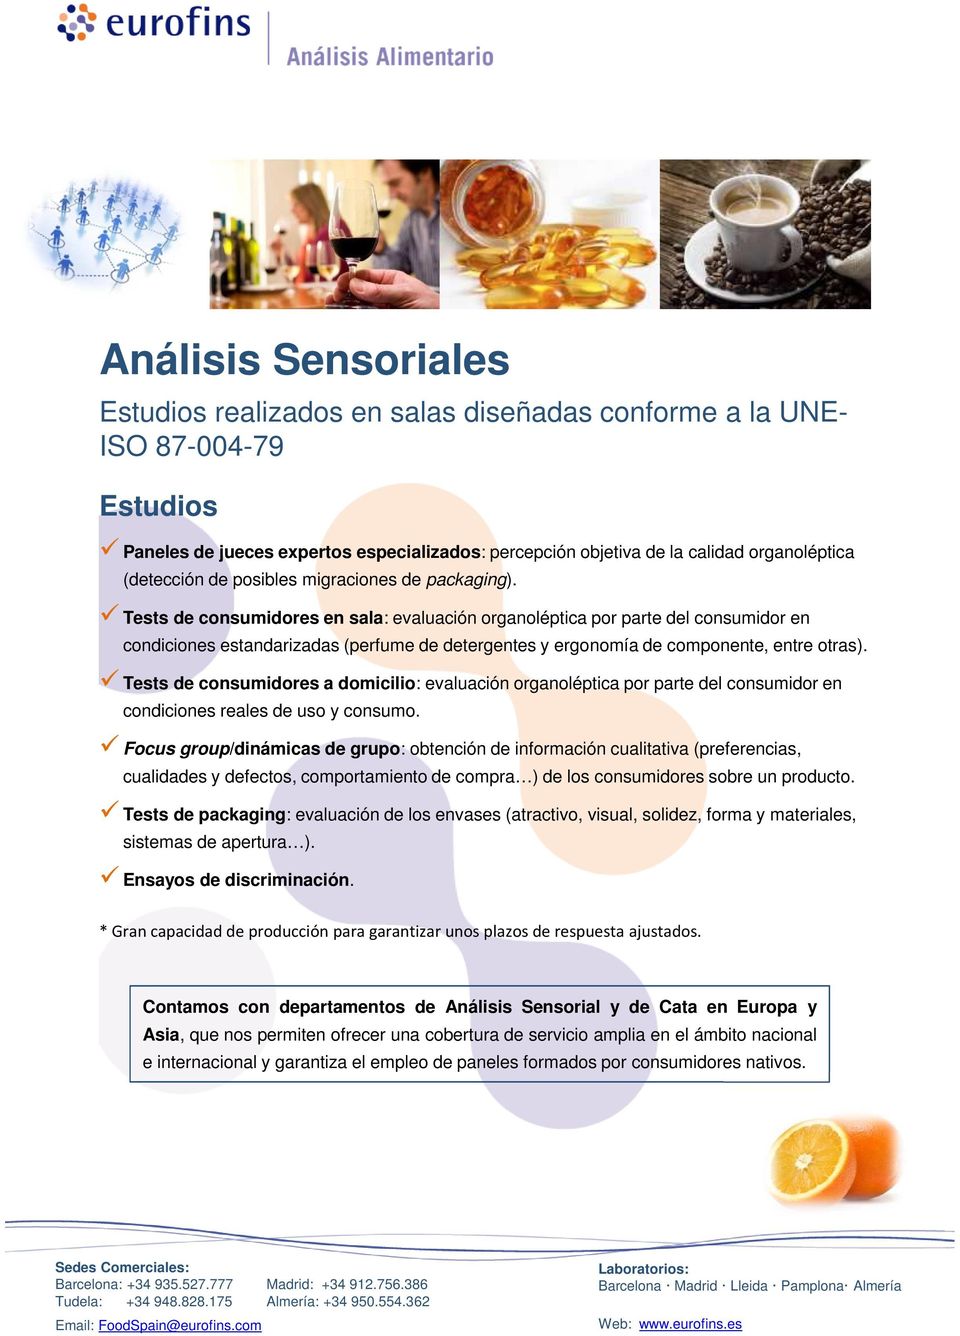 Tests de consumidores en sala: evaluación organoléptica por parte del consumidor en condiciones estandarizadas (perfume de detergentes y ergonomía de componente, entre otras).